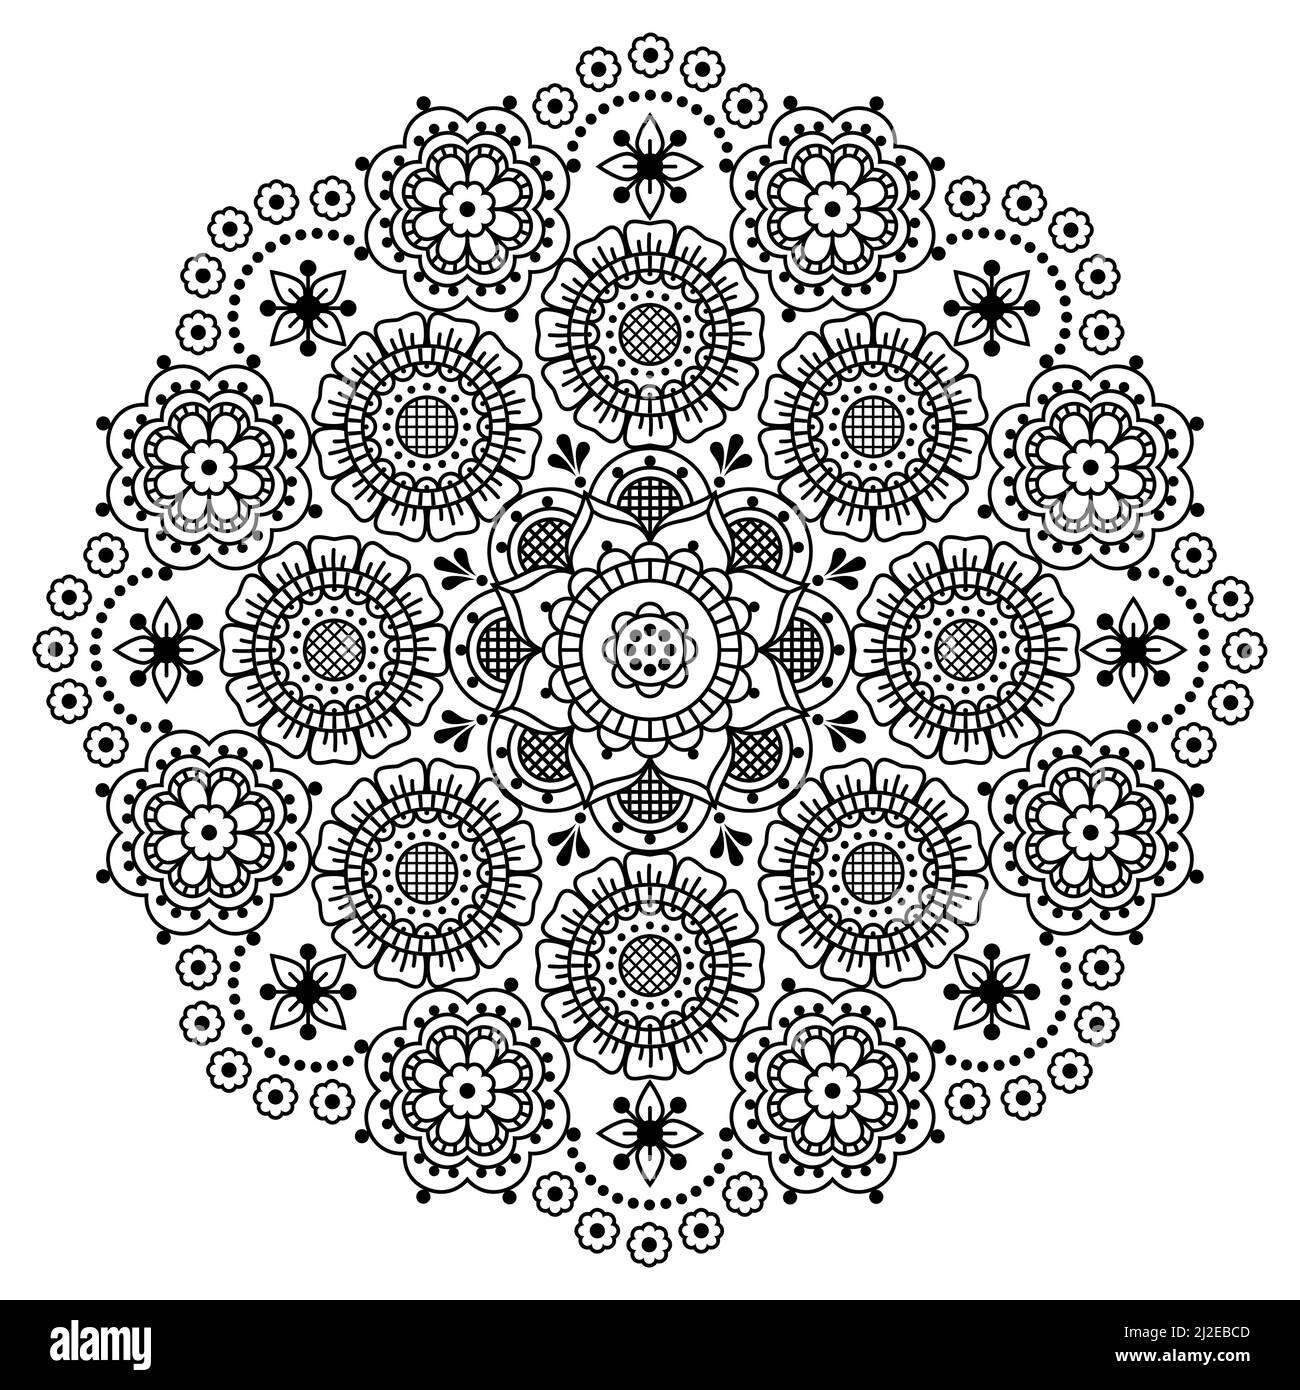 Scandinave mandala vector broderie folk art style, joli noir et blanc ronde design avec fleurs parfait pour carte de voeux ou invitation de mariage Illustration de Vecteur